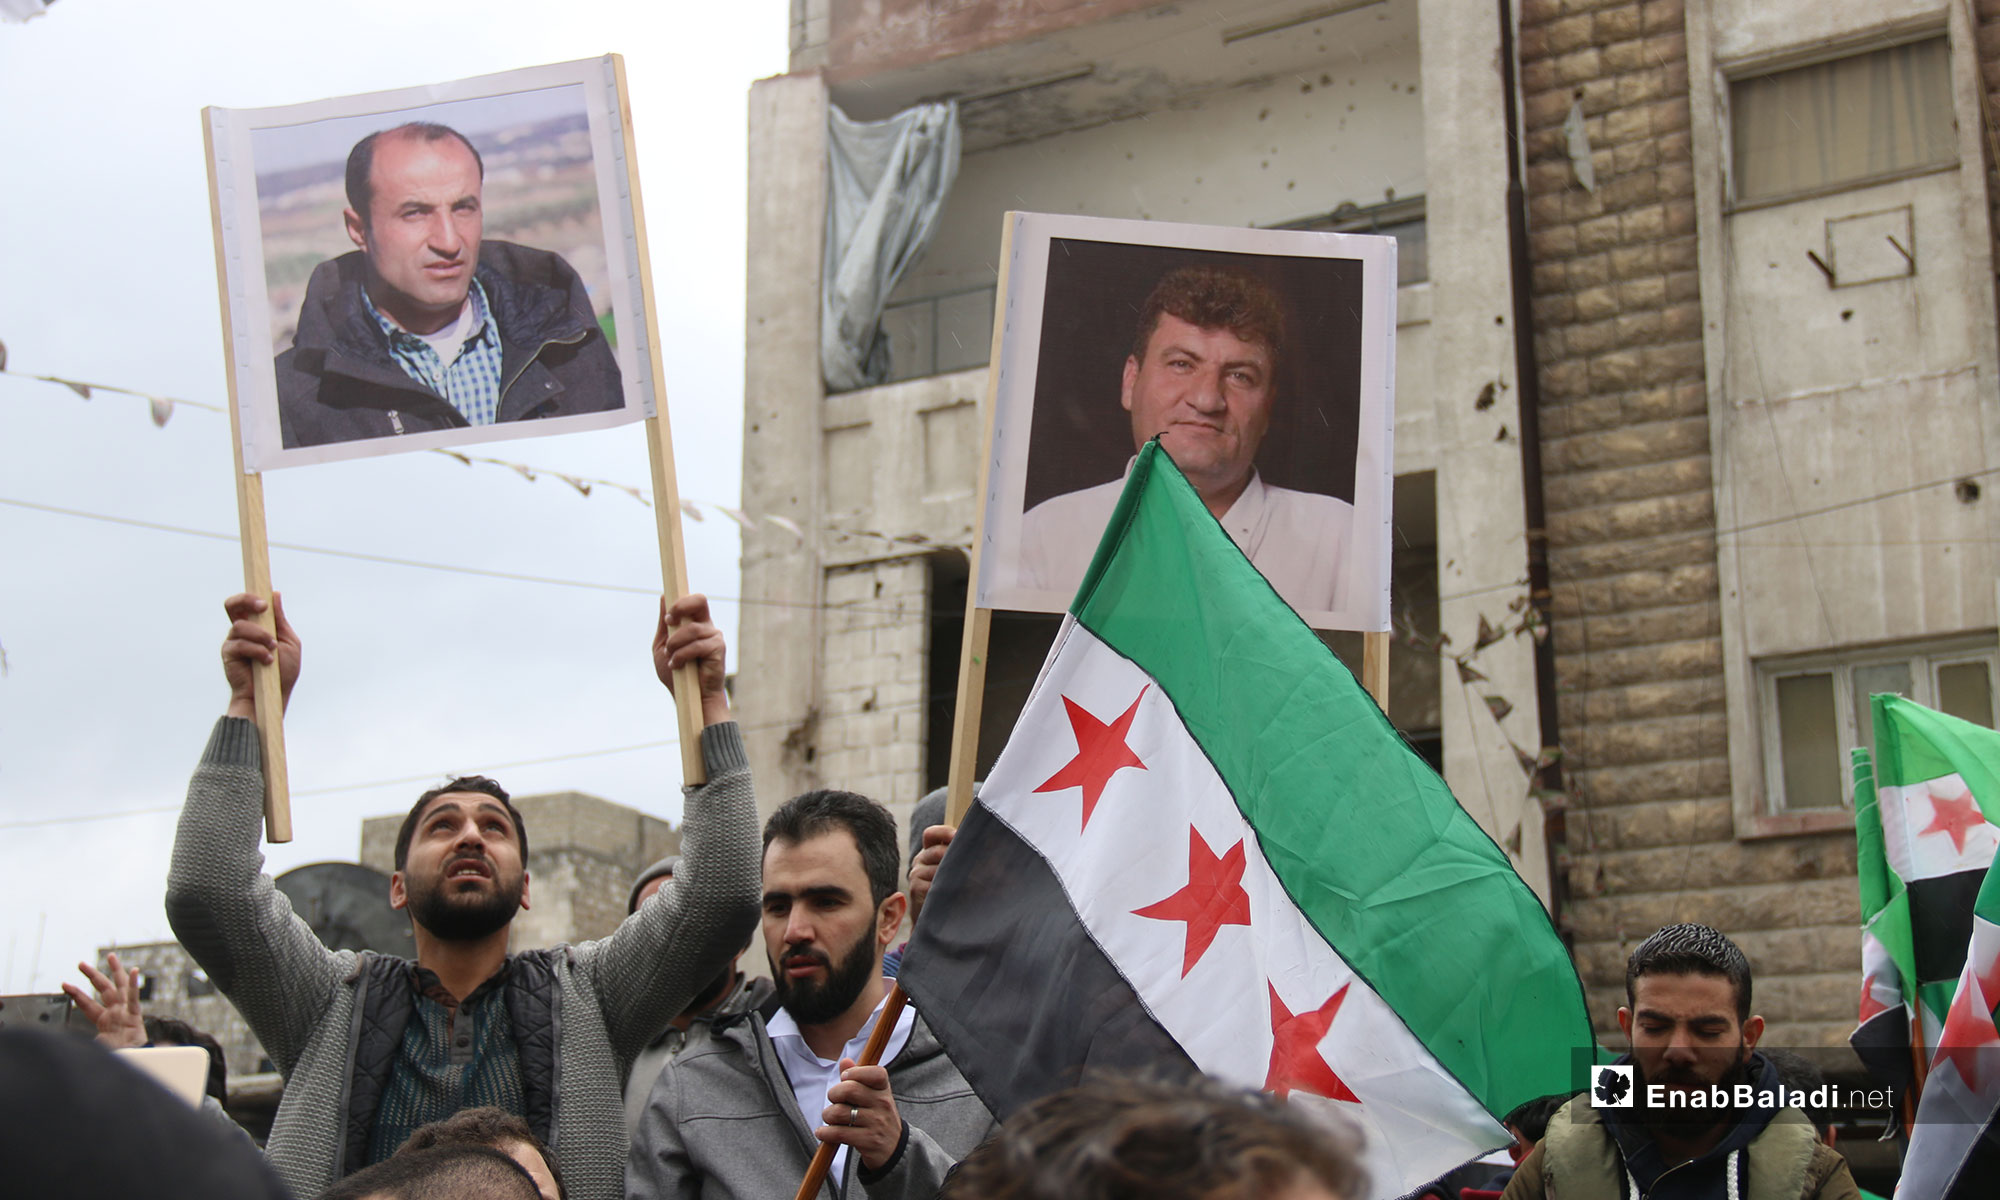 في الذكرى الثامنة للثورة السورية مظاهرة في معرة النعمان بريف إدلب - 15 من آذار 2019 (عنب بلدي)